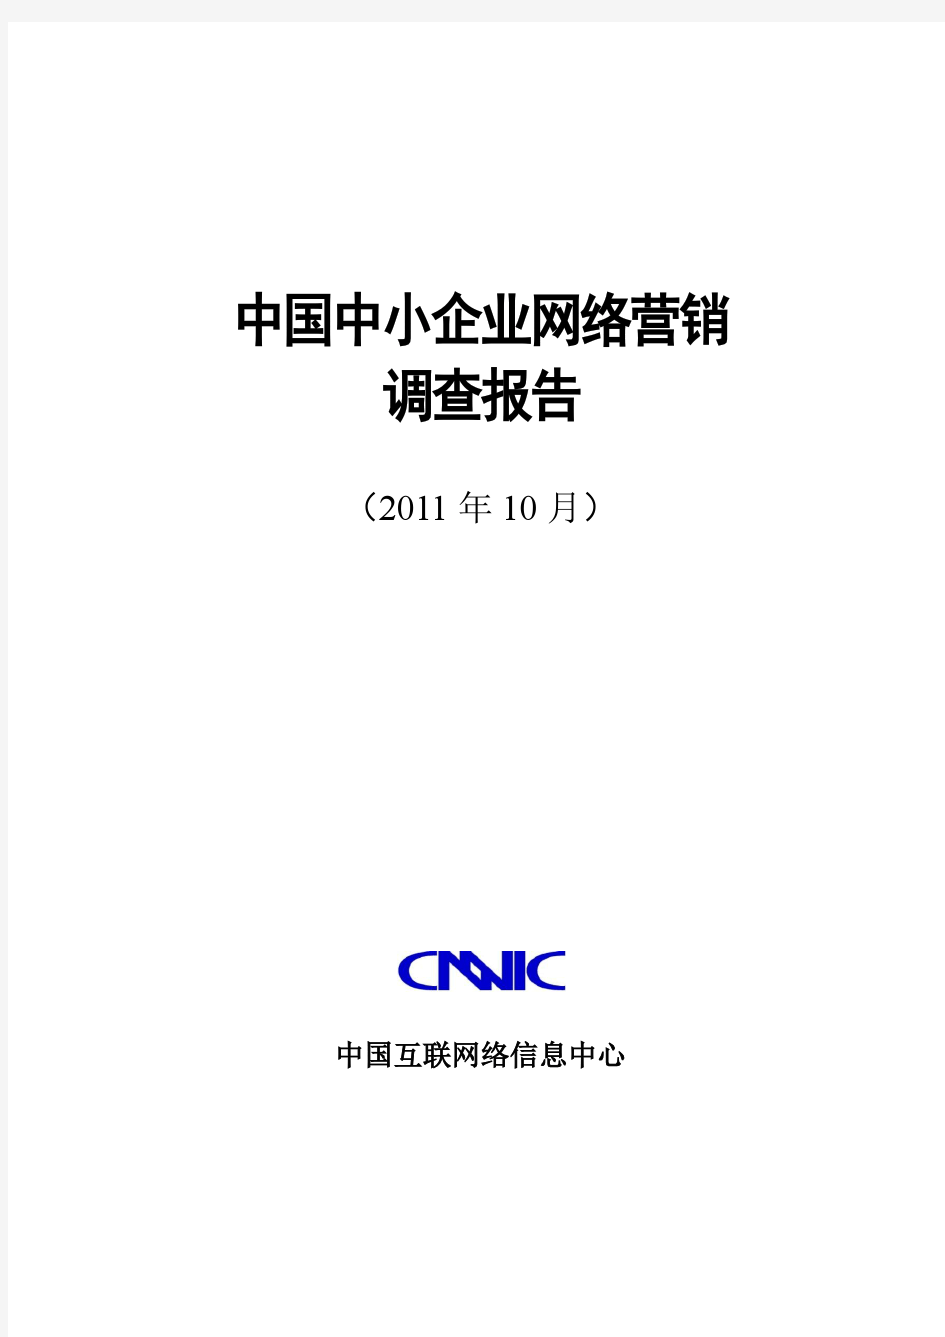 《中国中小企业互联网应用状况调查报告》